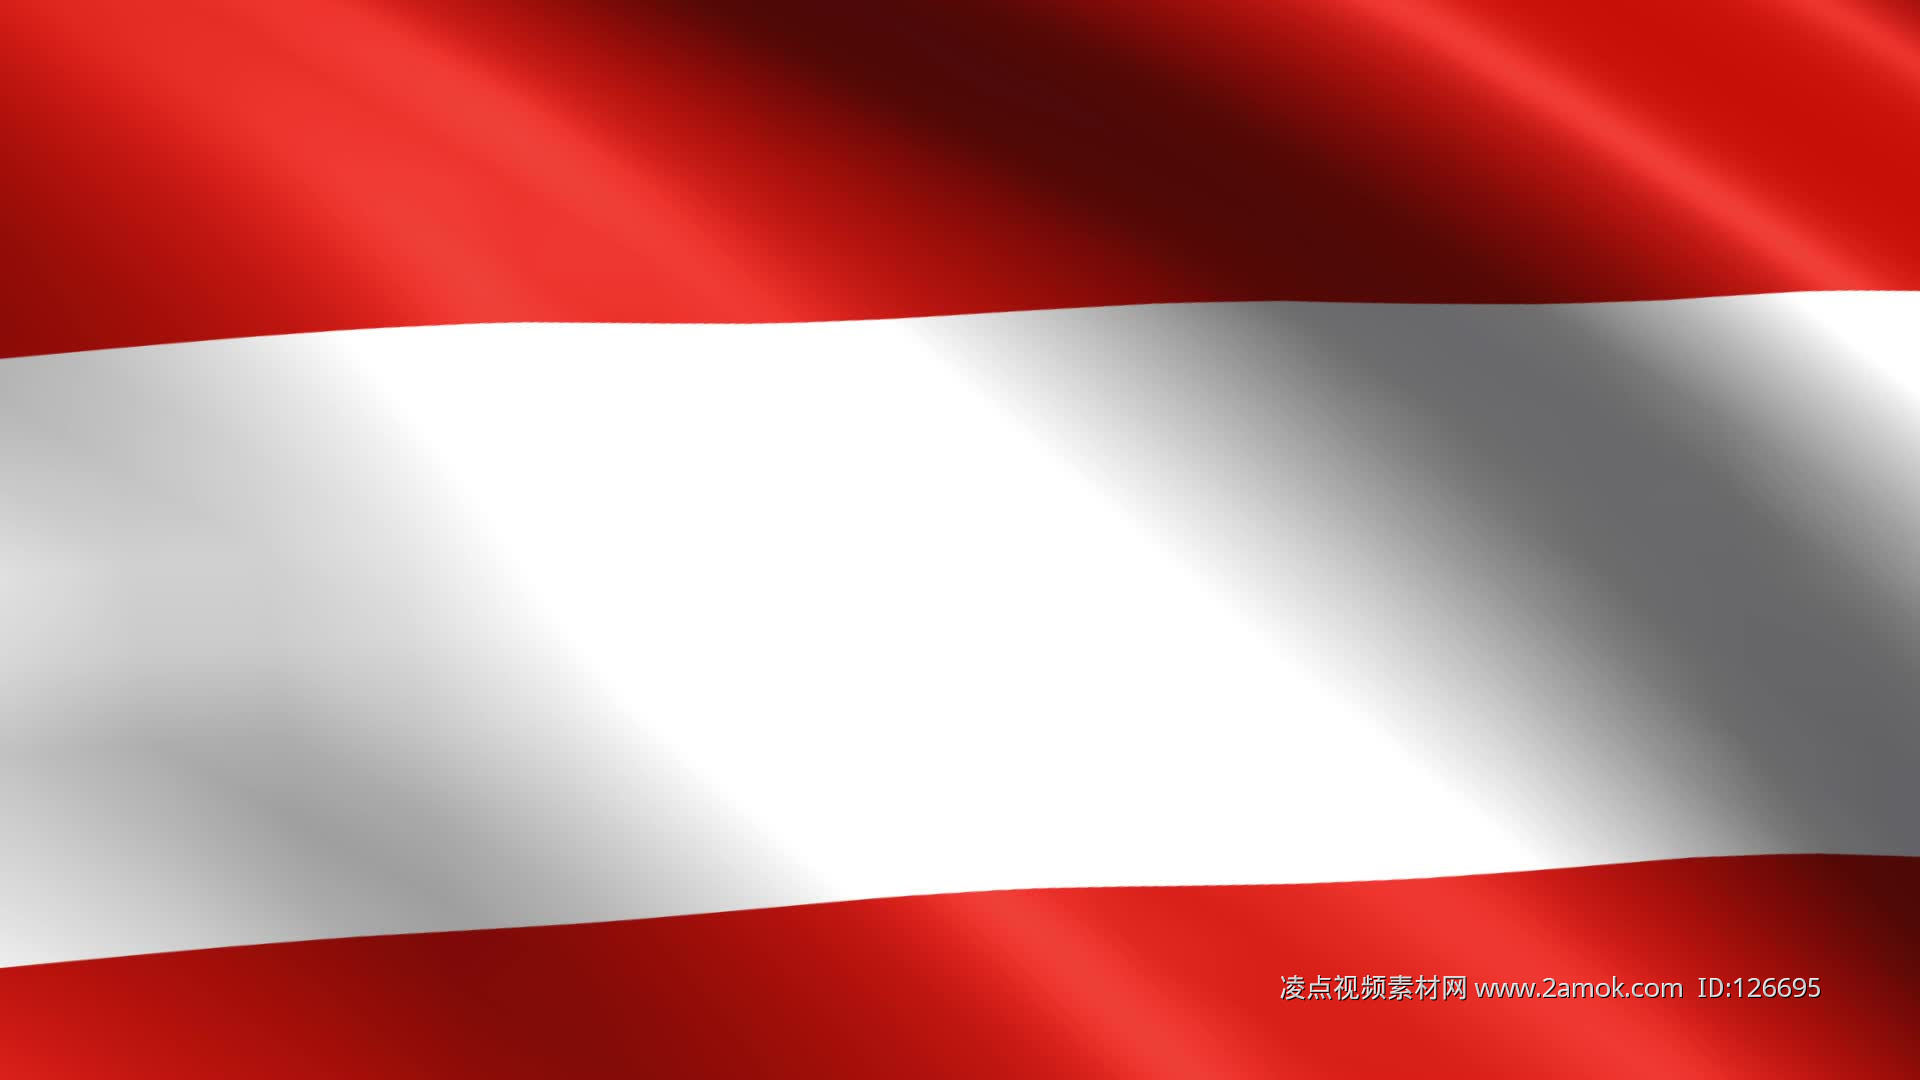 奥地利国旗在裂墙上 库存图片. 图片 包括有 国家, 政府, 格朗基, 庆祝, 联邦, 爱国, 设计, 困厄 - 185705681